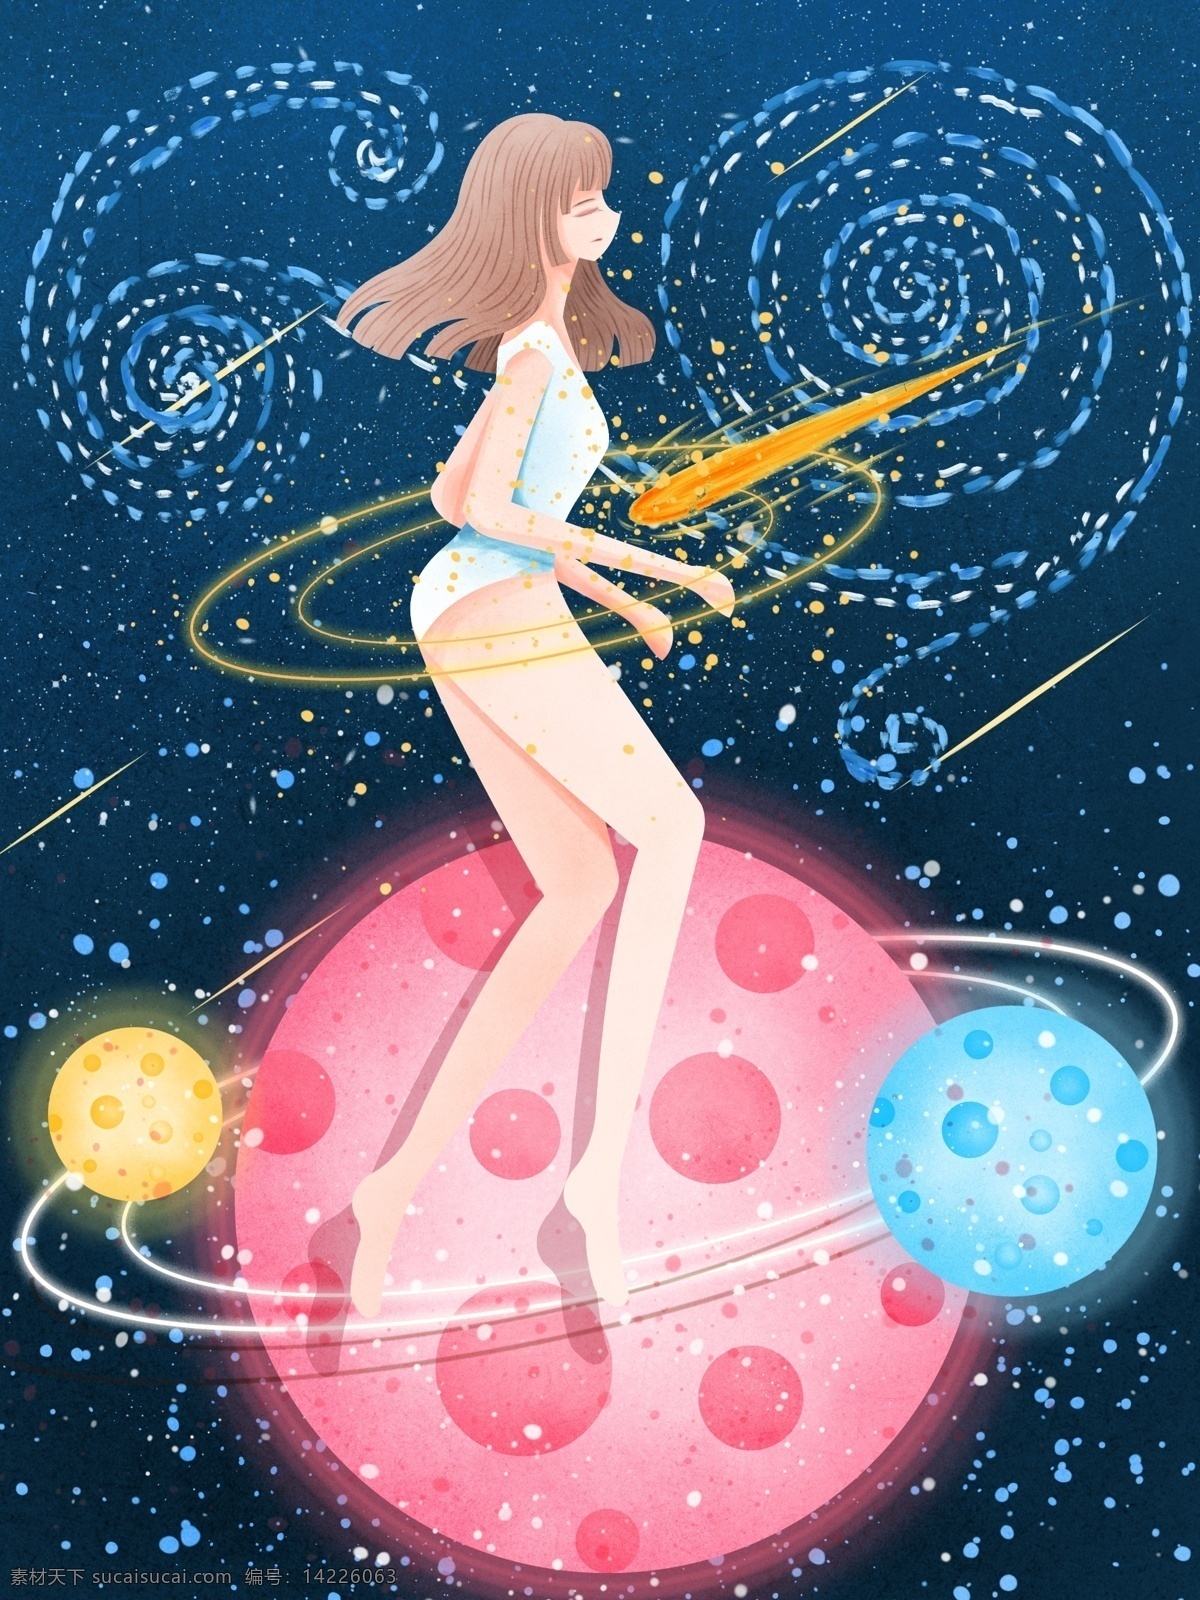 宇宙 奇妙 之旅 肌理 写实 插画 星空 清新 梦幻 壁纸 星球 流星 女孩 背景